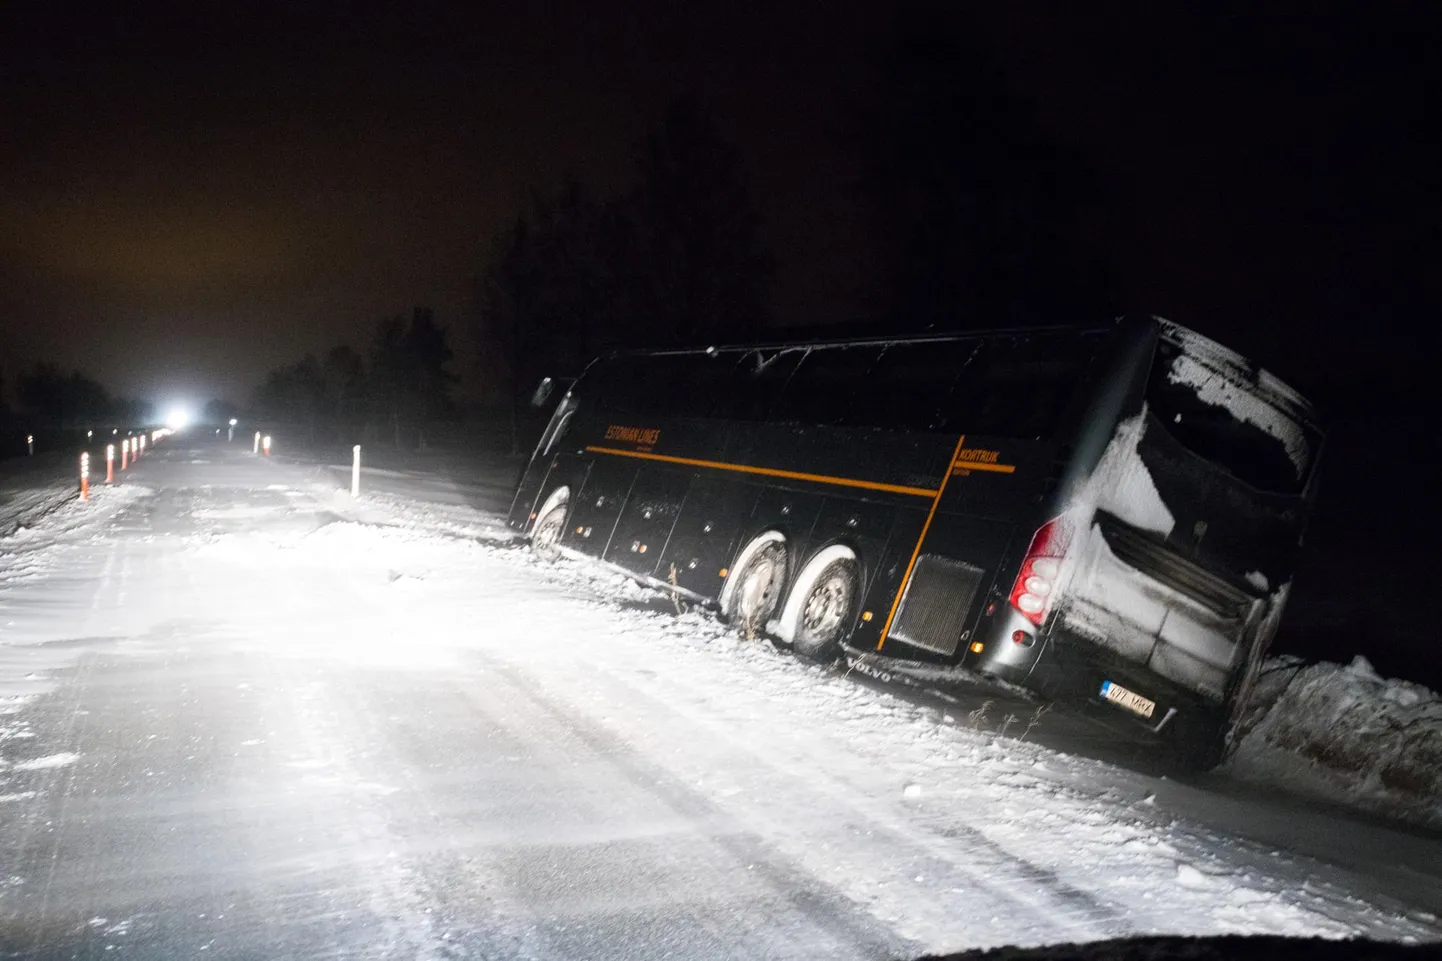 Talvetormid võivad tuua endaga kaose liikluses, samuti elektri- ja veekatkestusi - nendeks tuleb valmis olla. Pildil tormi ja lumesaju tõttu teelt välja sõitnud buss Aaspere kandis 2. jaanuaril 2019.